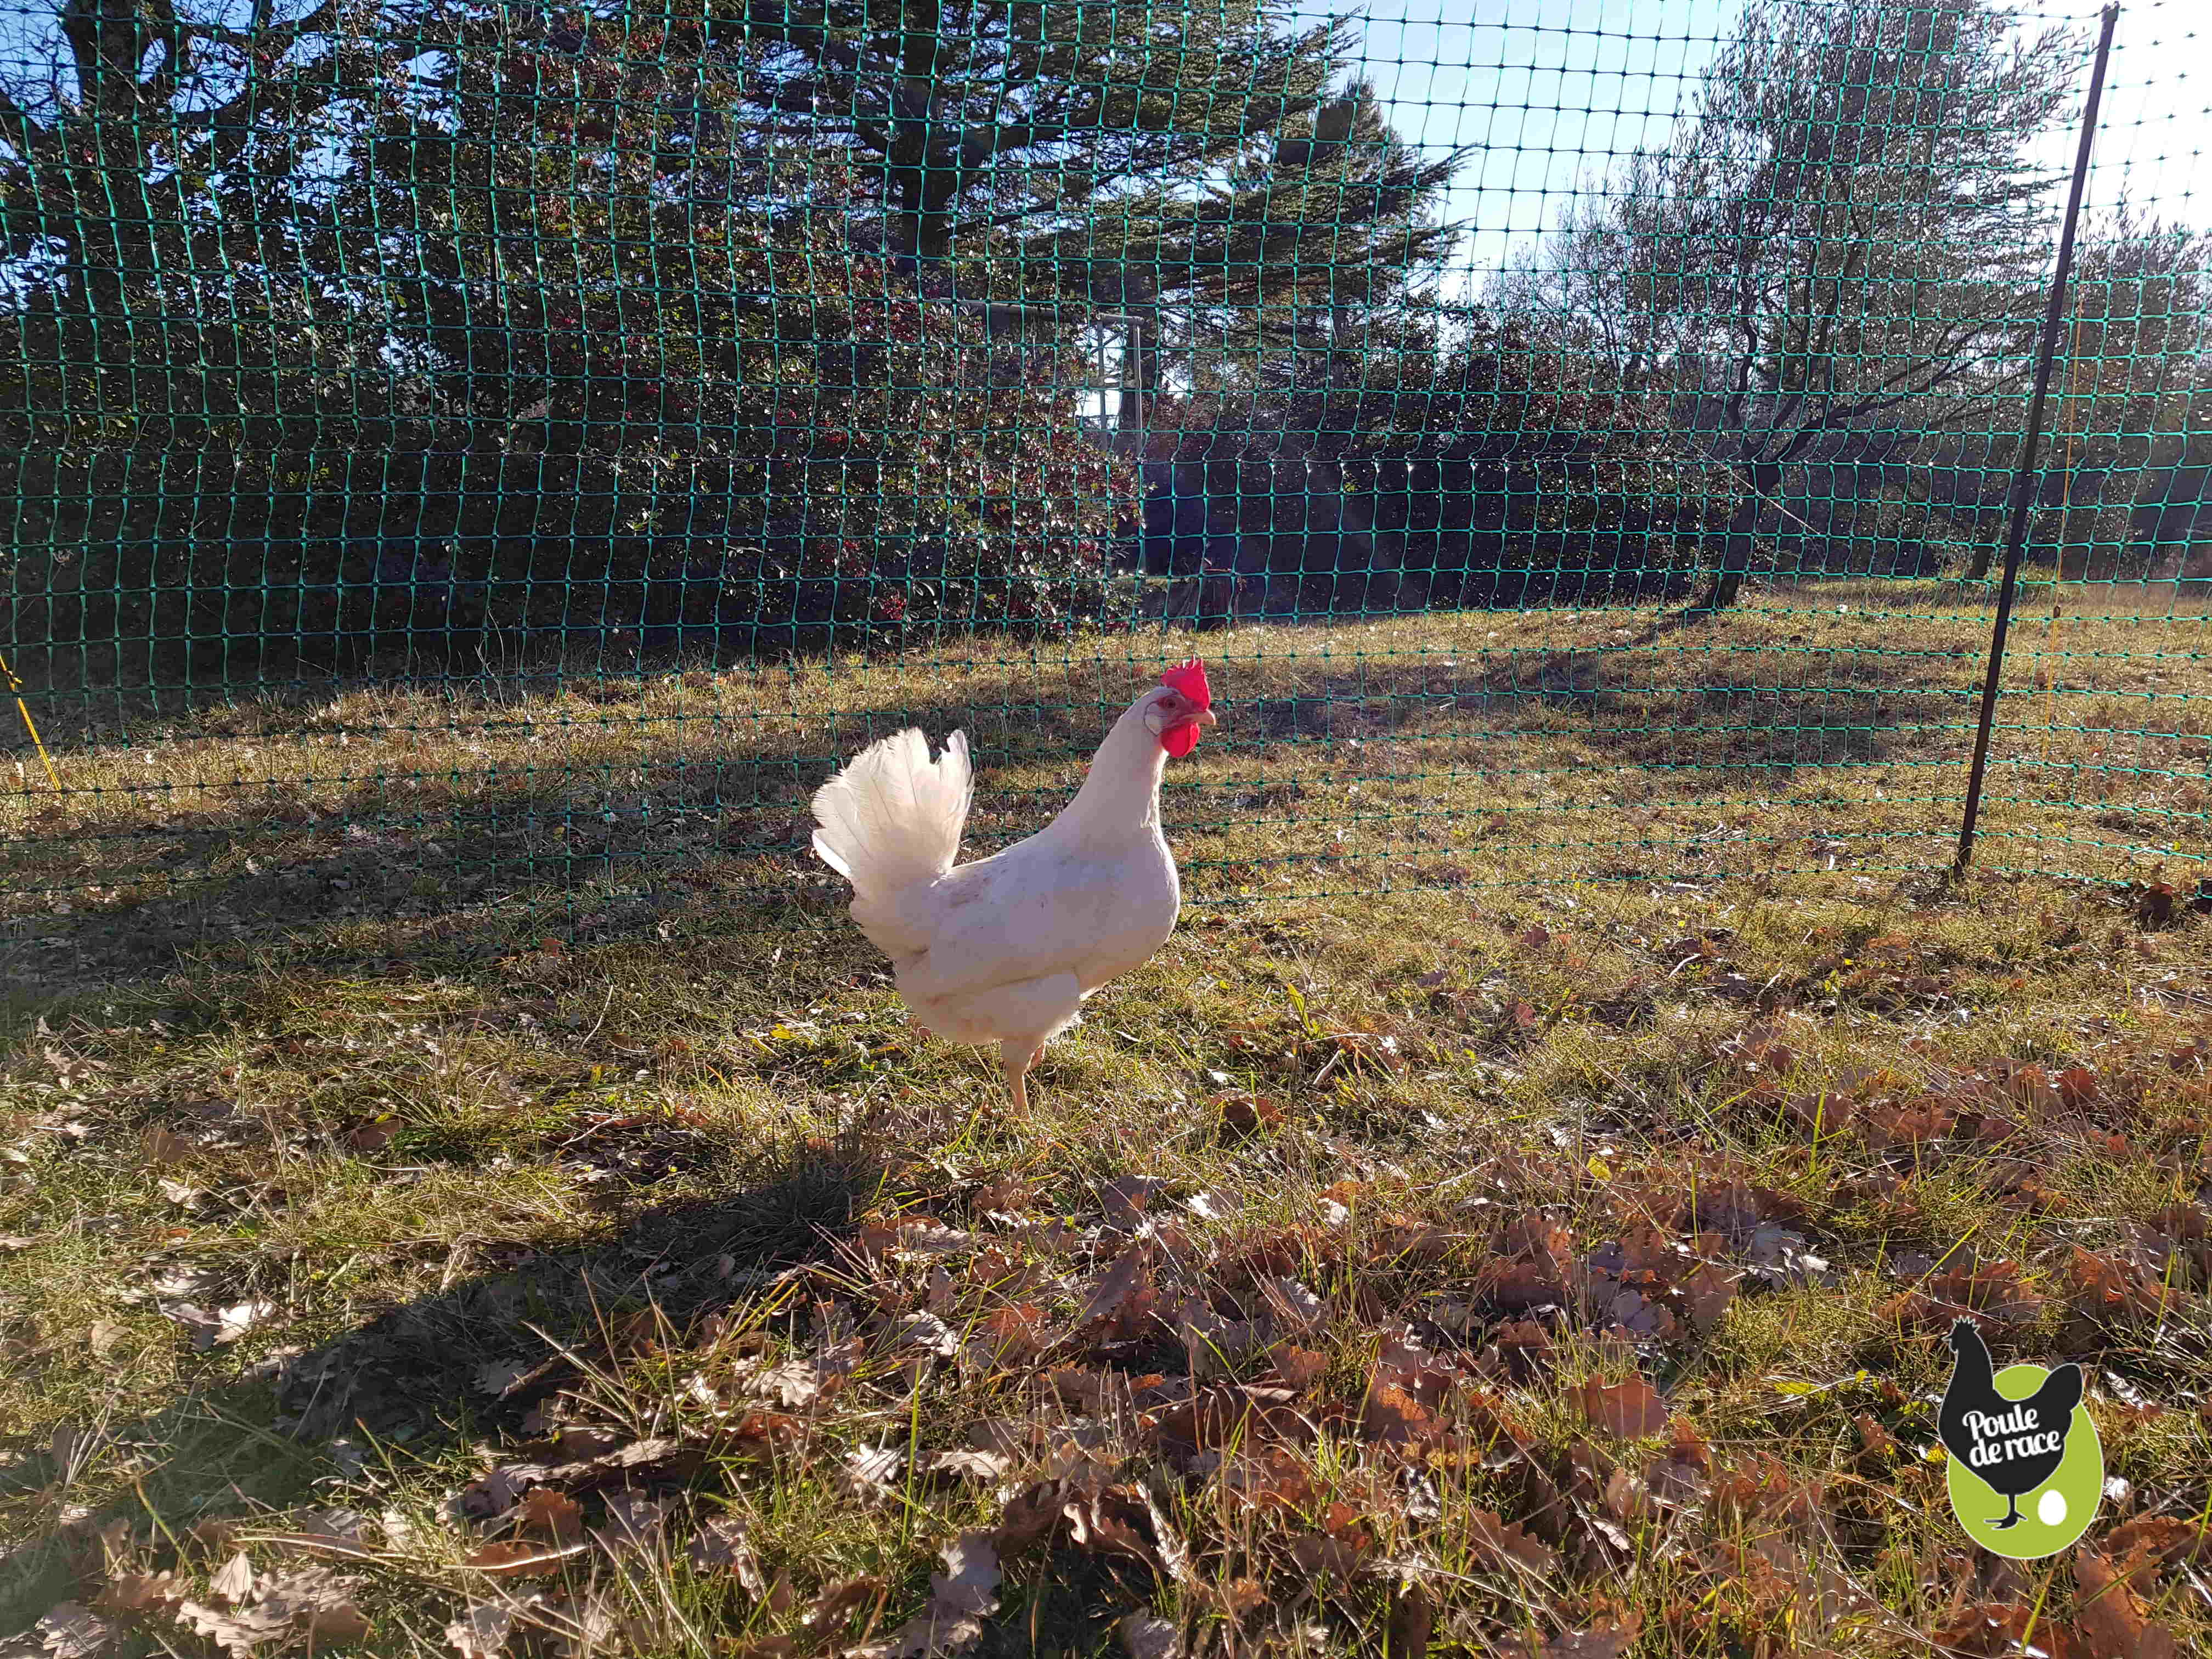 le filet permet de faire profiter les poules d'un parc herbeux